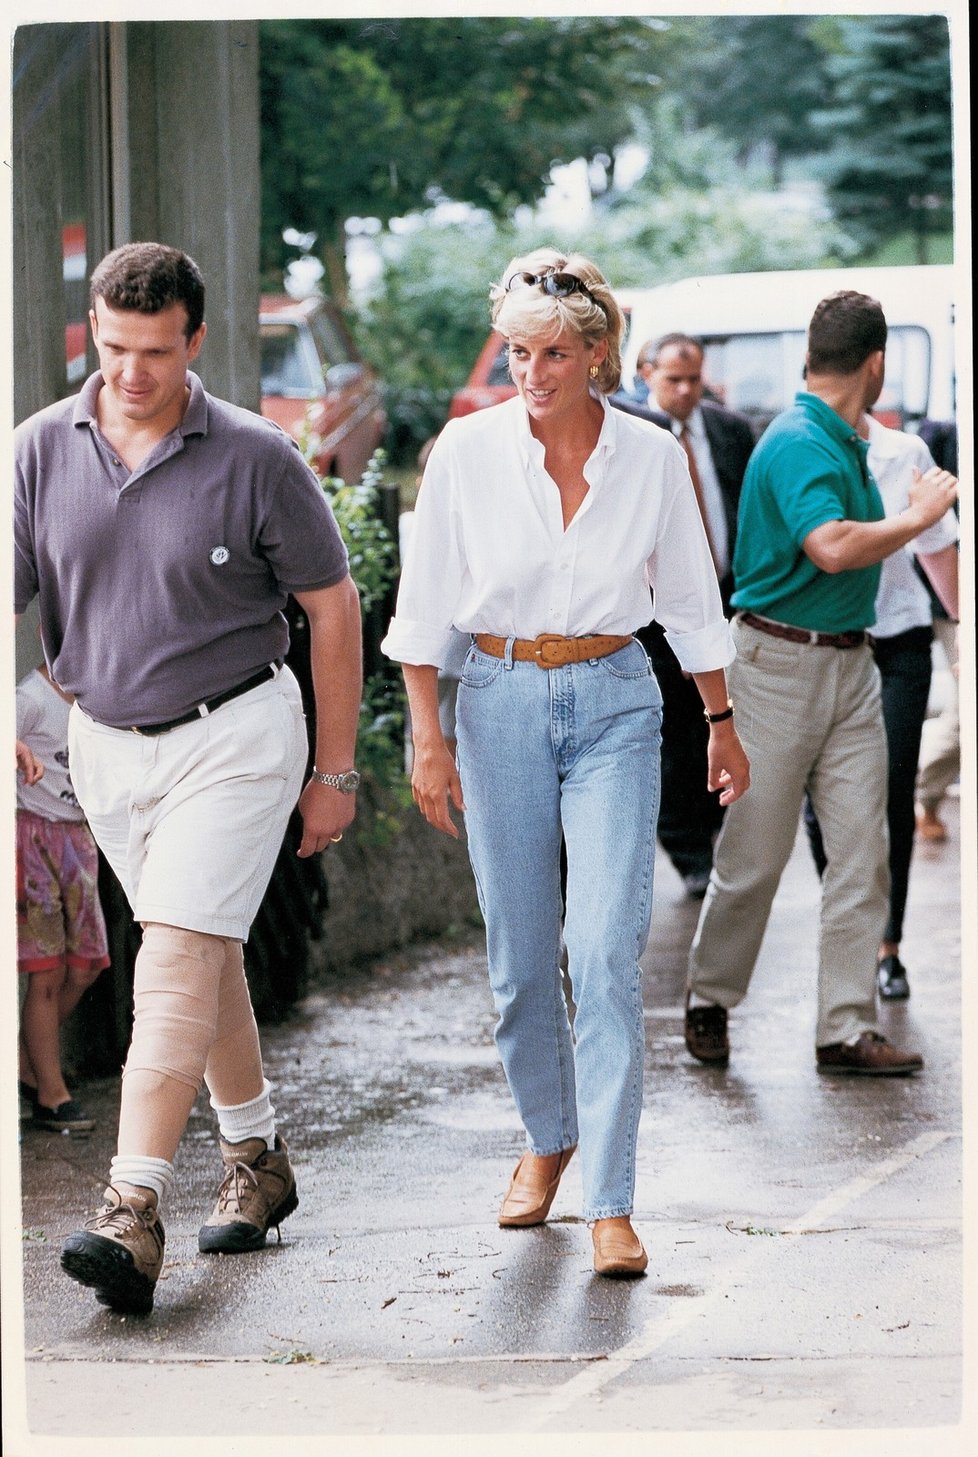 1997: Princezna Diana v džínech v Bosně s Červeným křížem